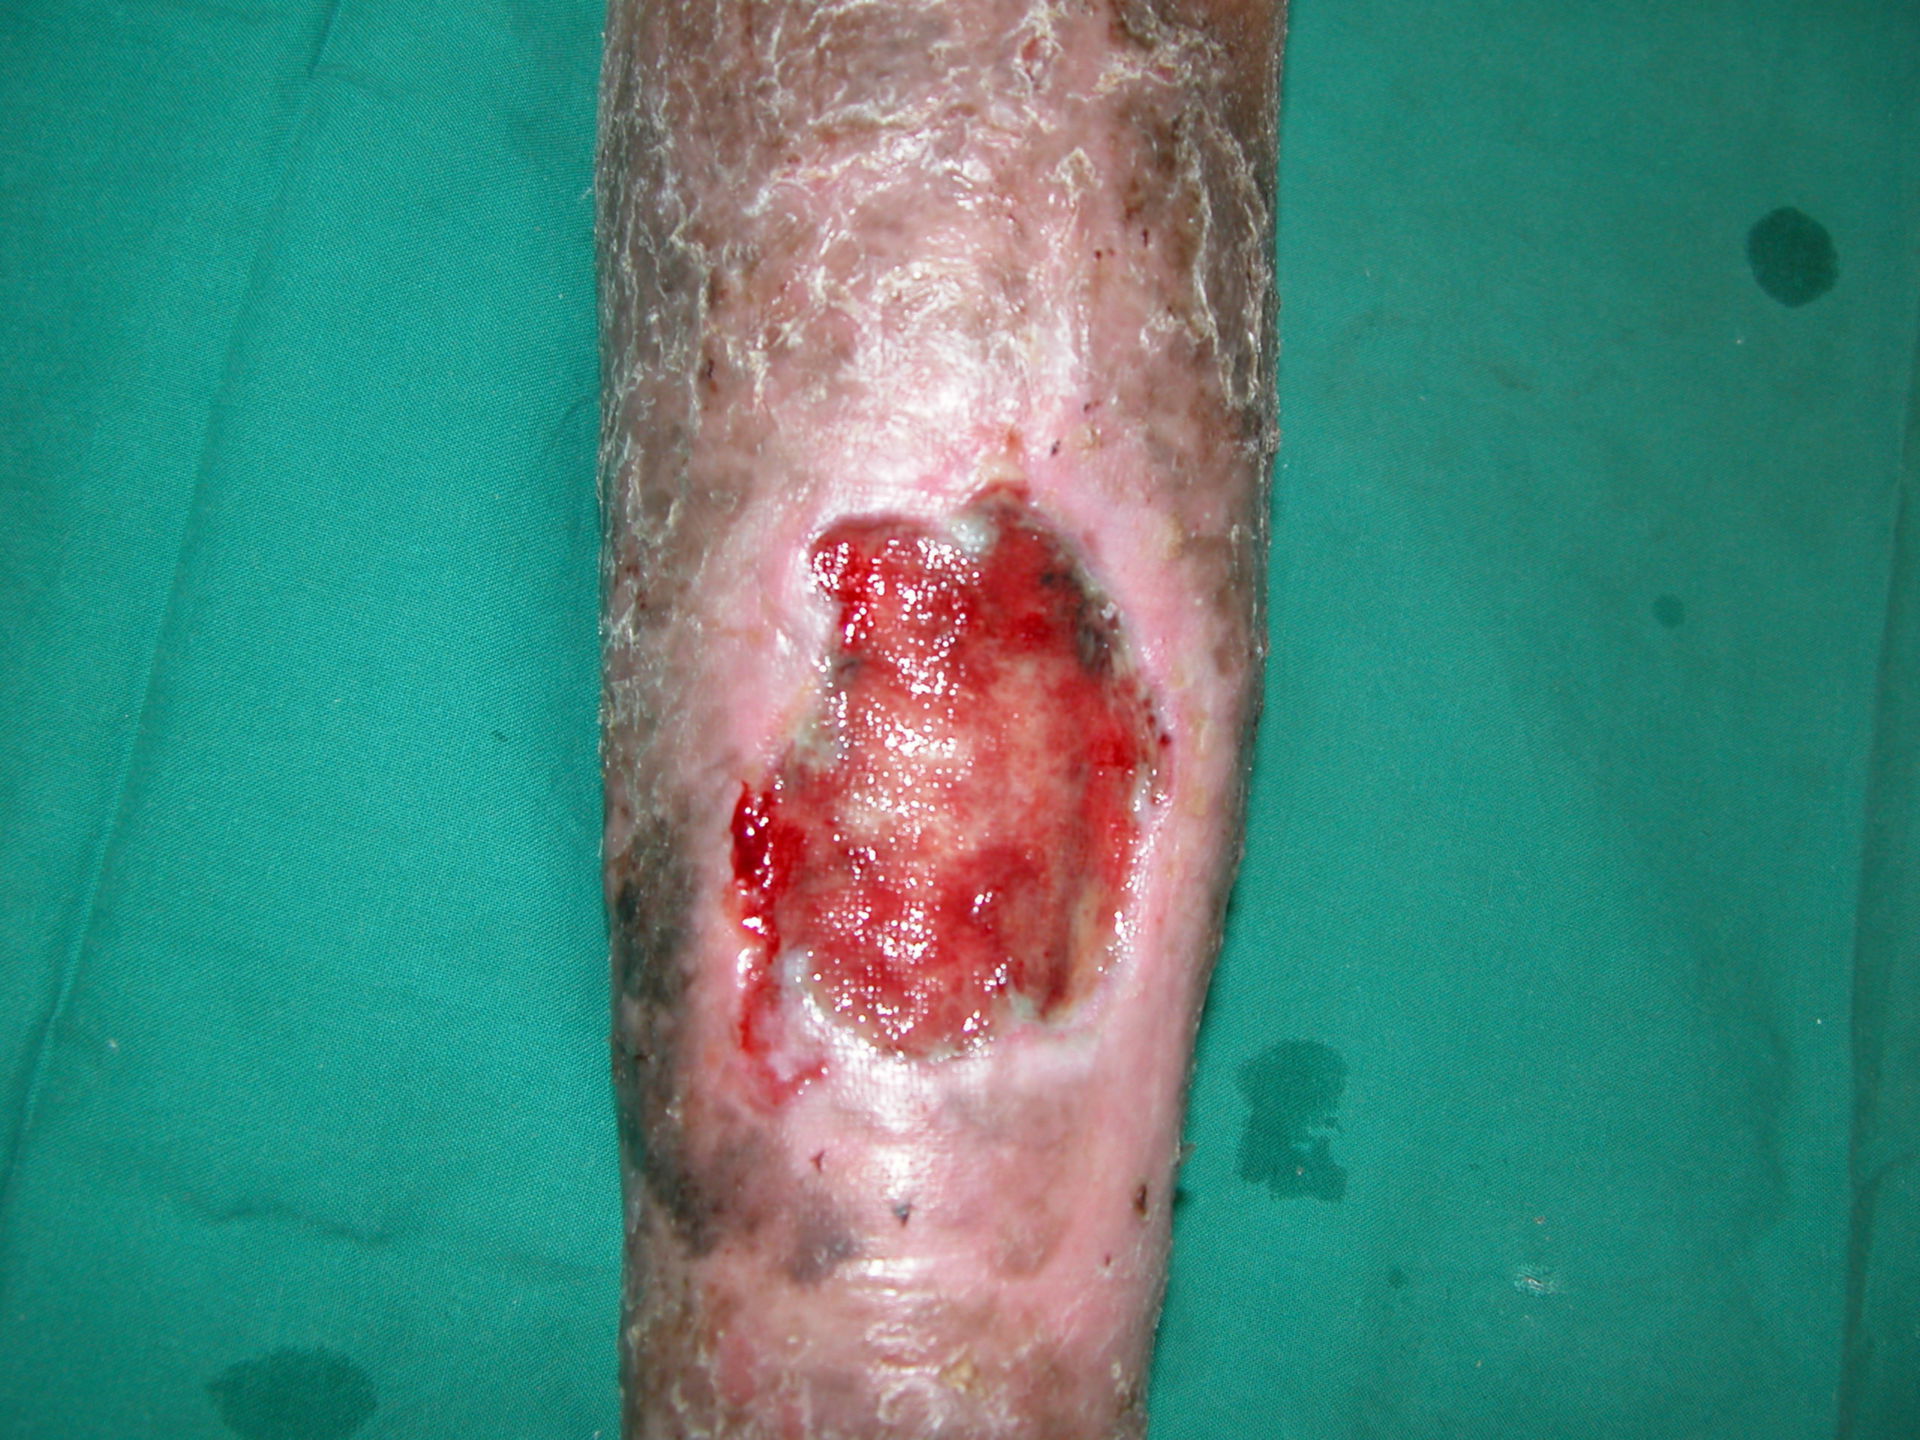 Vene varicose con ulcere. Iperpigmentazione, curata Dott. Ykshim. S Yonsei ospedale Seoul, Korea